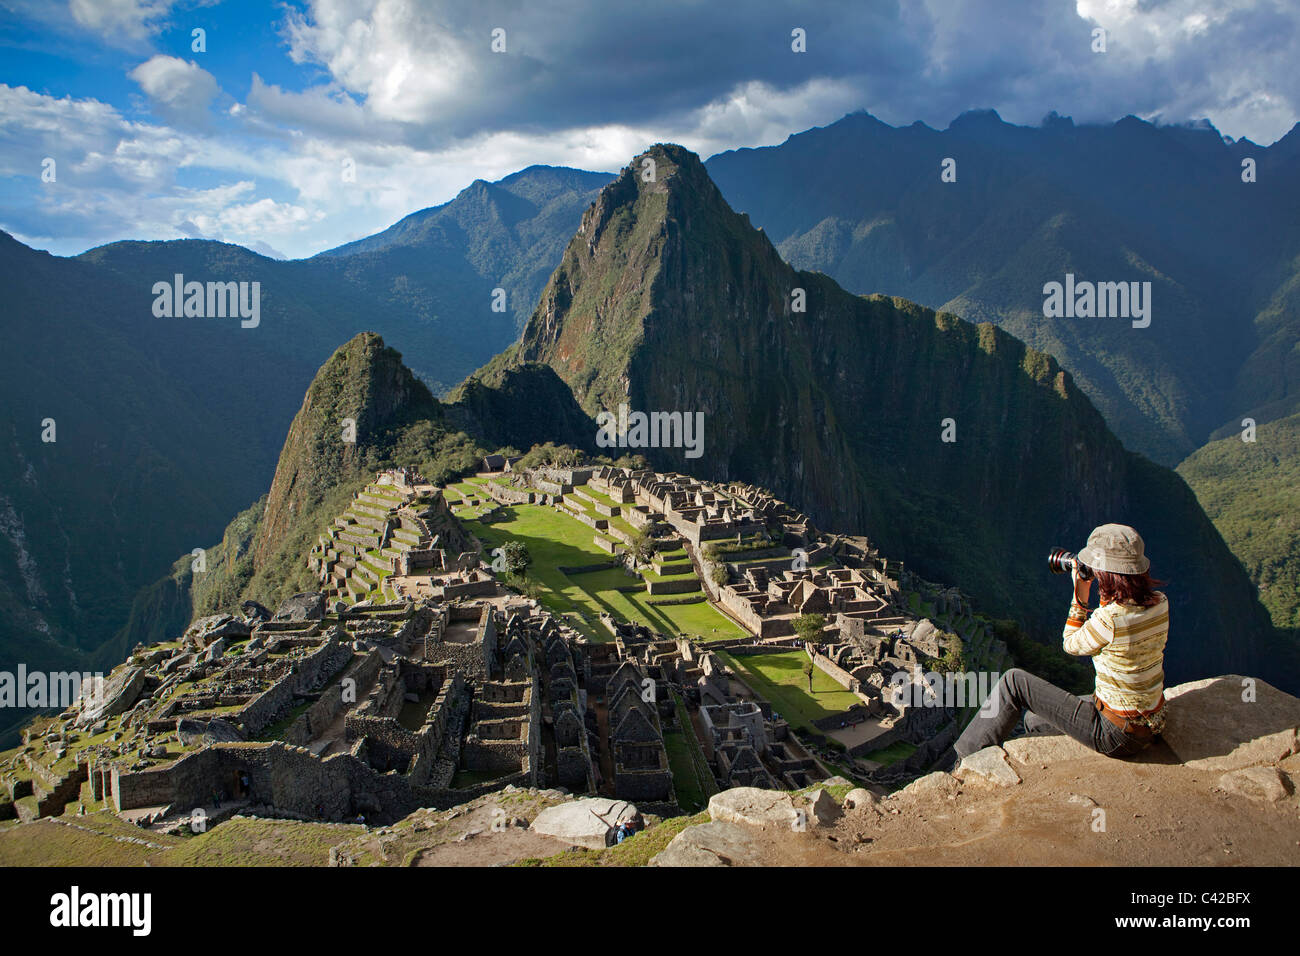 Pérou, Aguas Calientes, Machu Picchu.15e siècle site Inca situé à 2 430 mètres (7 970 ft) au-dessus du niveau de la mer. Touriste. Banque D'Images